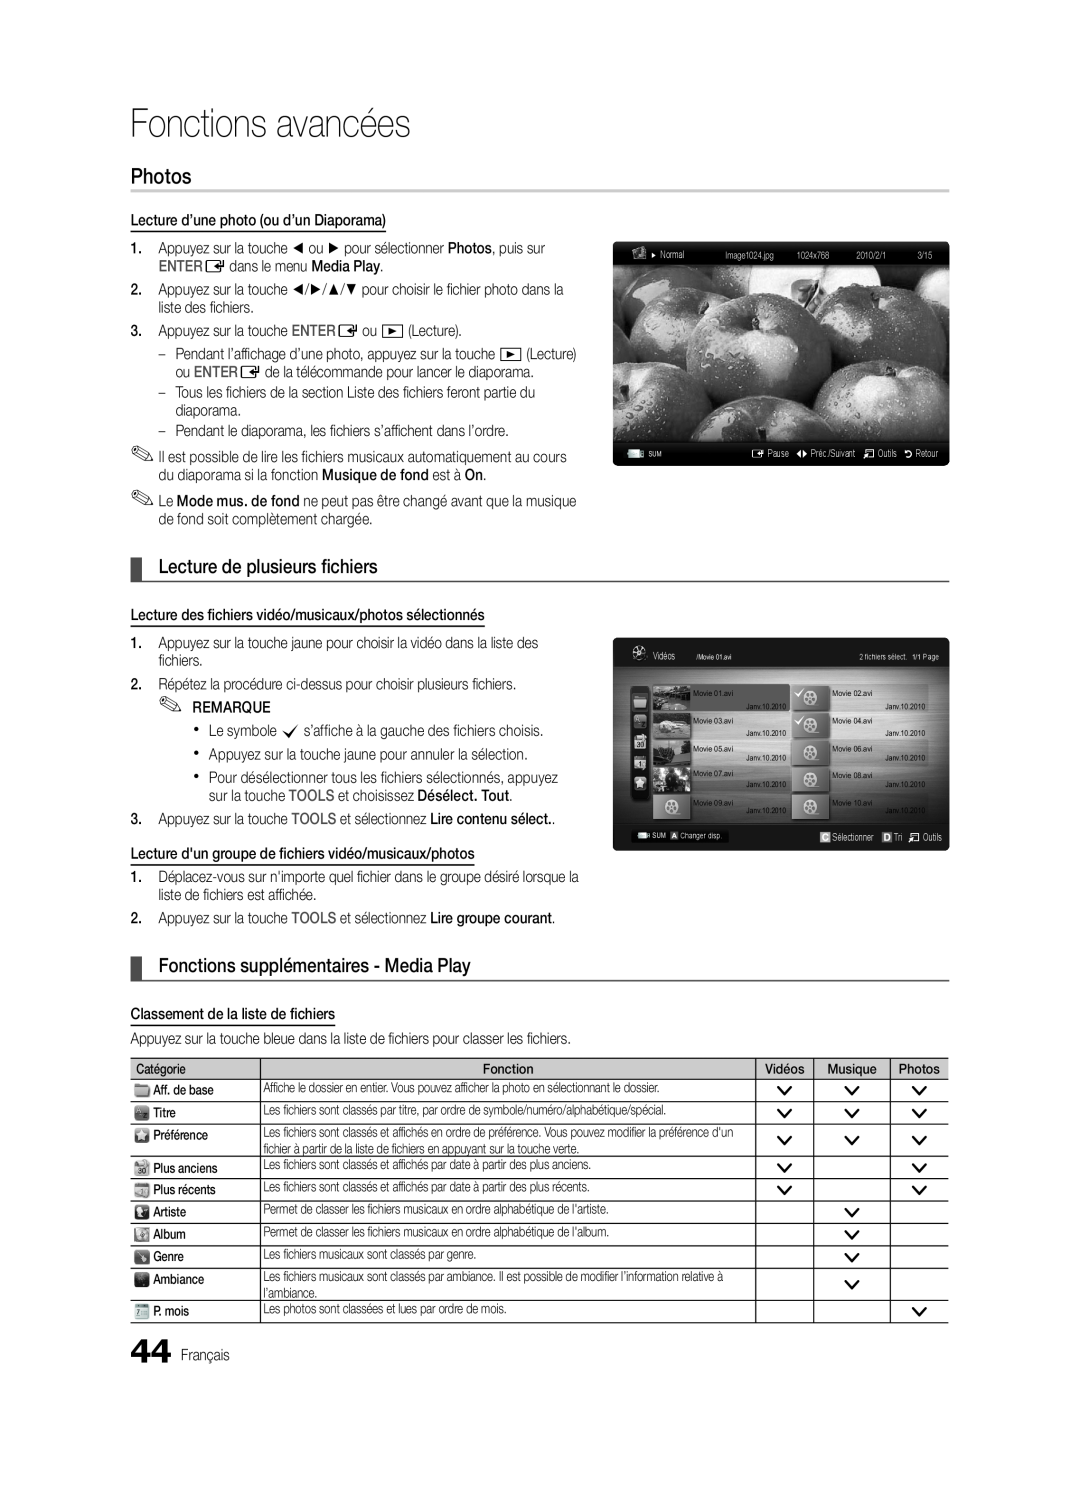 Samsung BN68-03088A-01 Lecture de plusieurs fichiers, Fonctions supplémentaires - Media Play, Fonctions avancées, Photos 